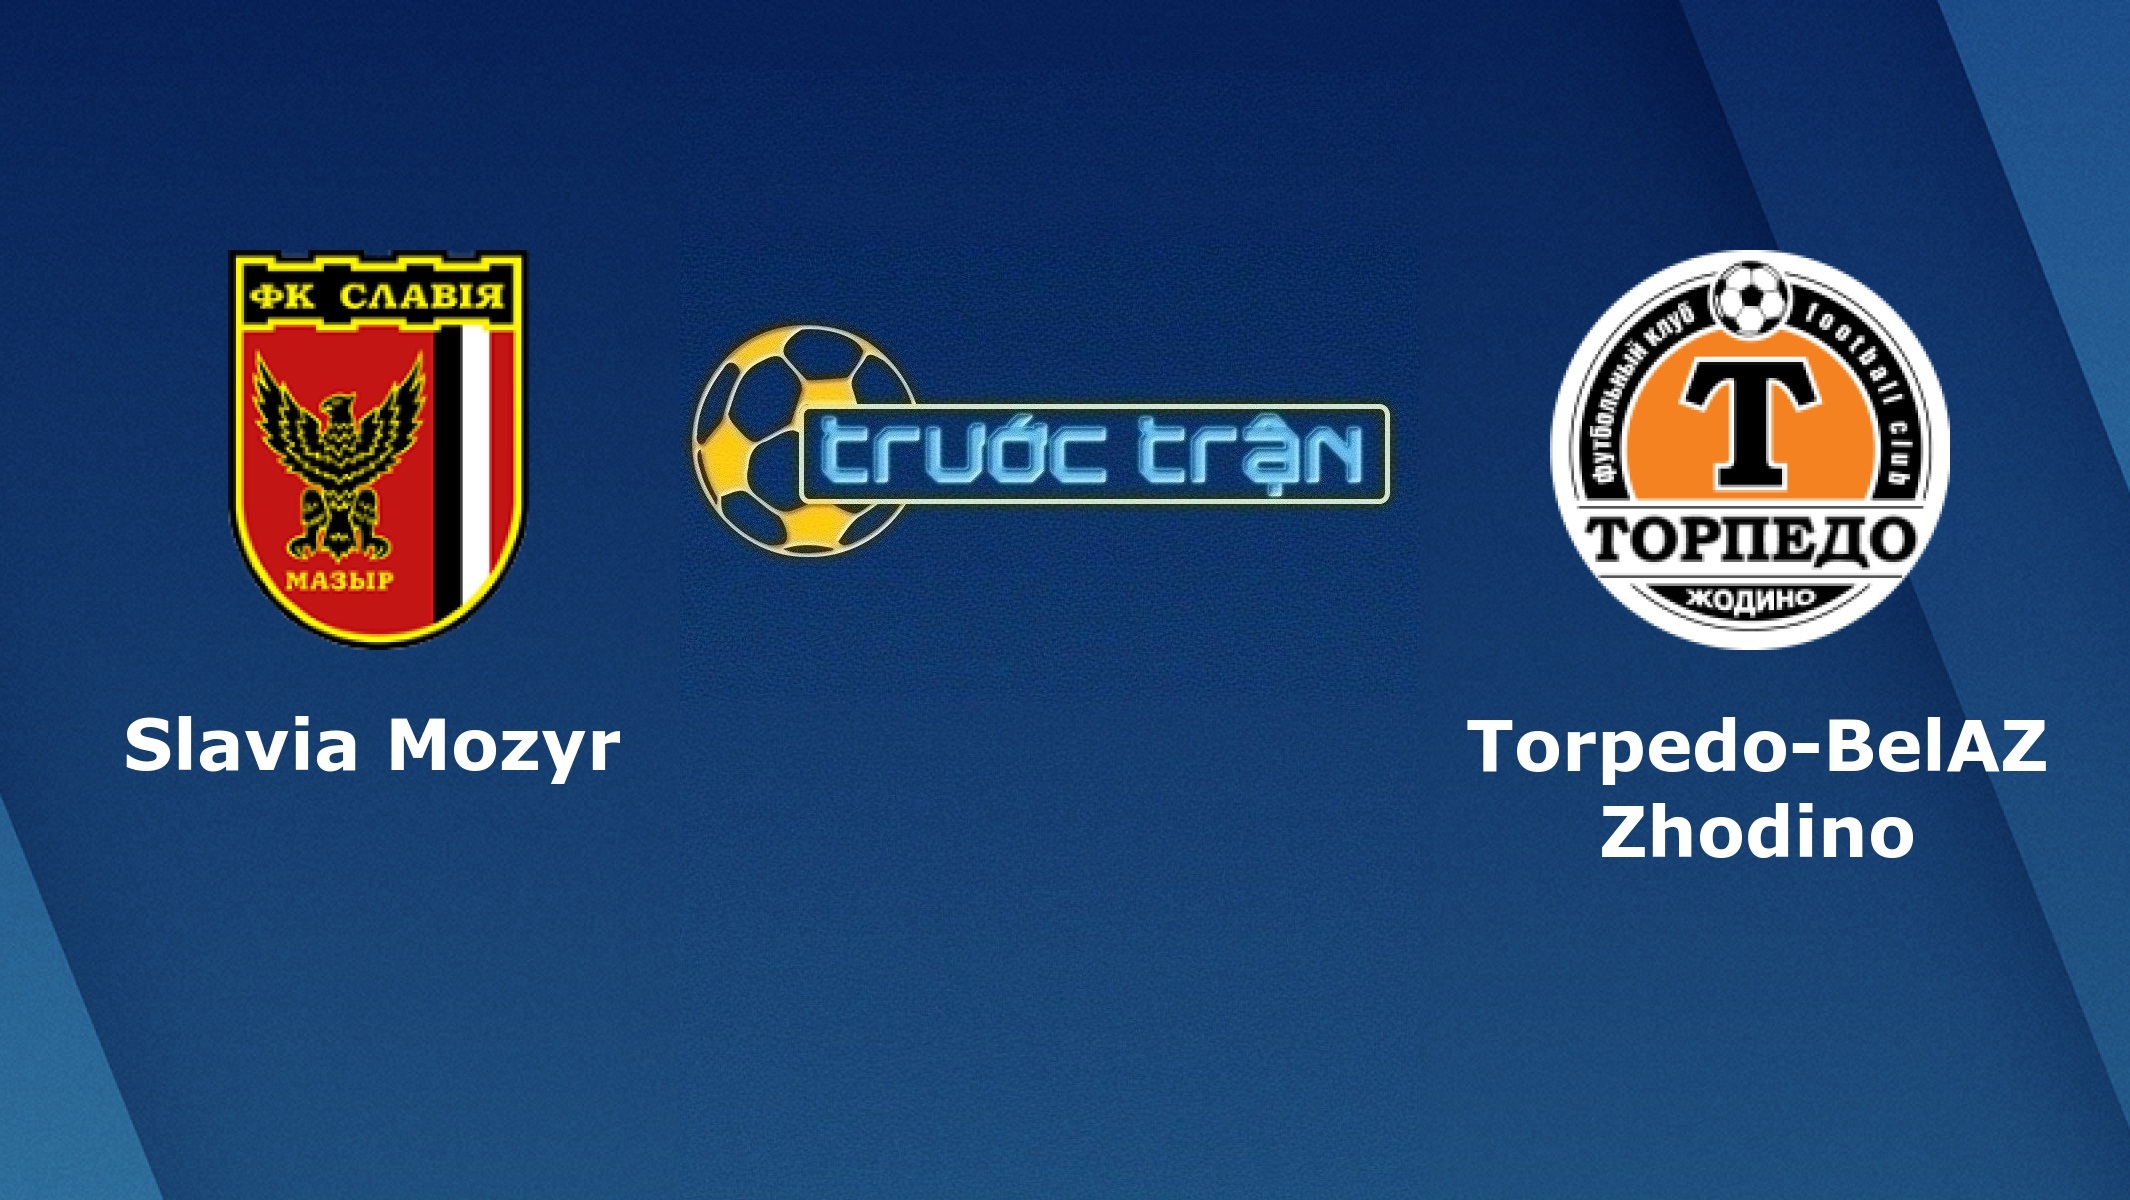 Slavia Mozyr vs Torpedo Zhodino – Tip kèo bóng đá hôm nay – 09/05